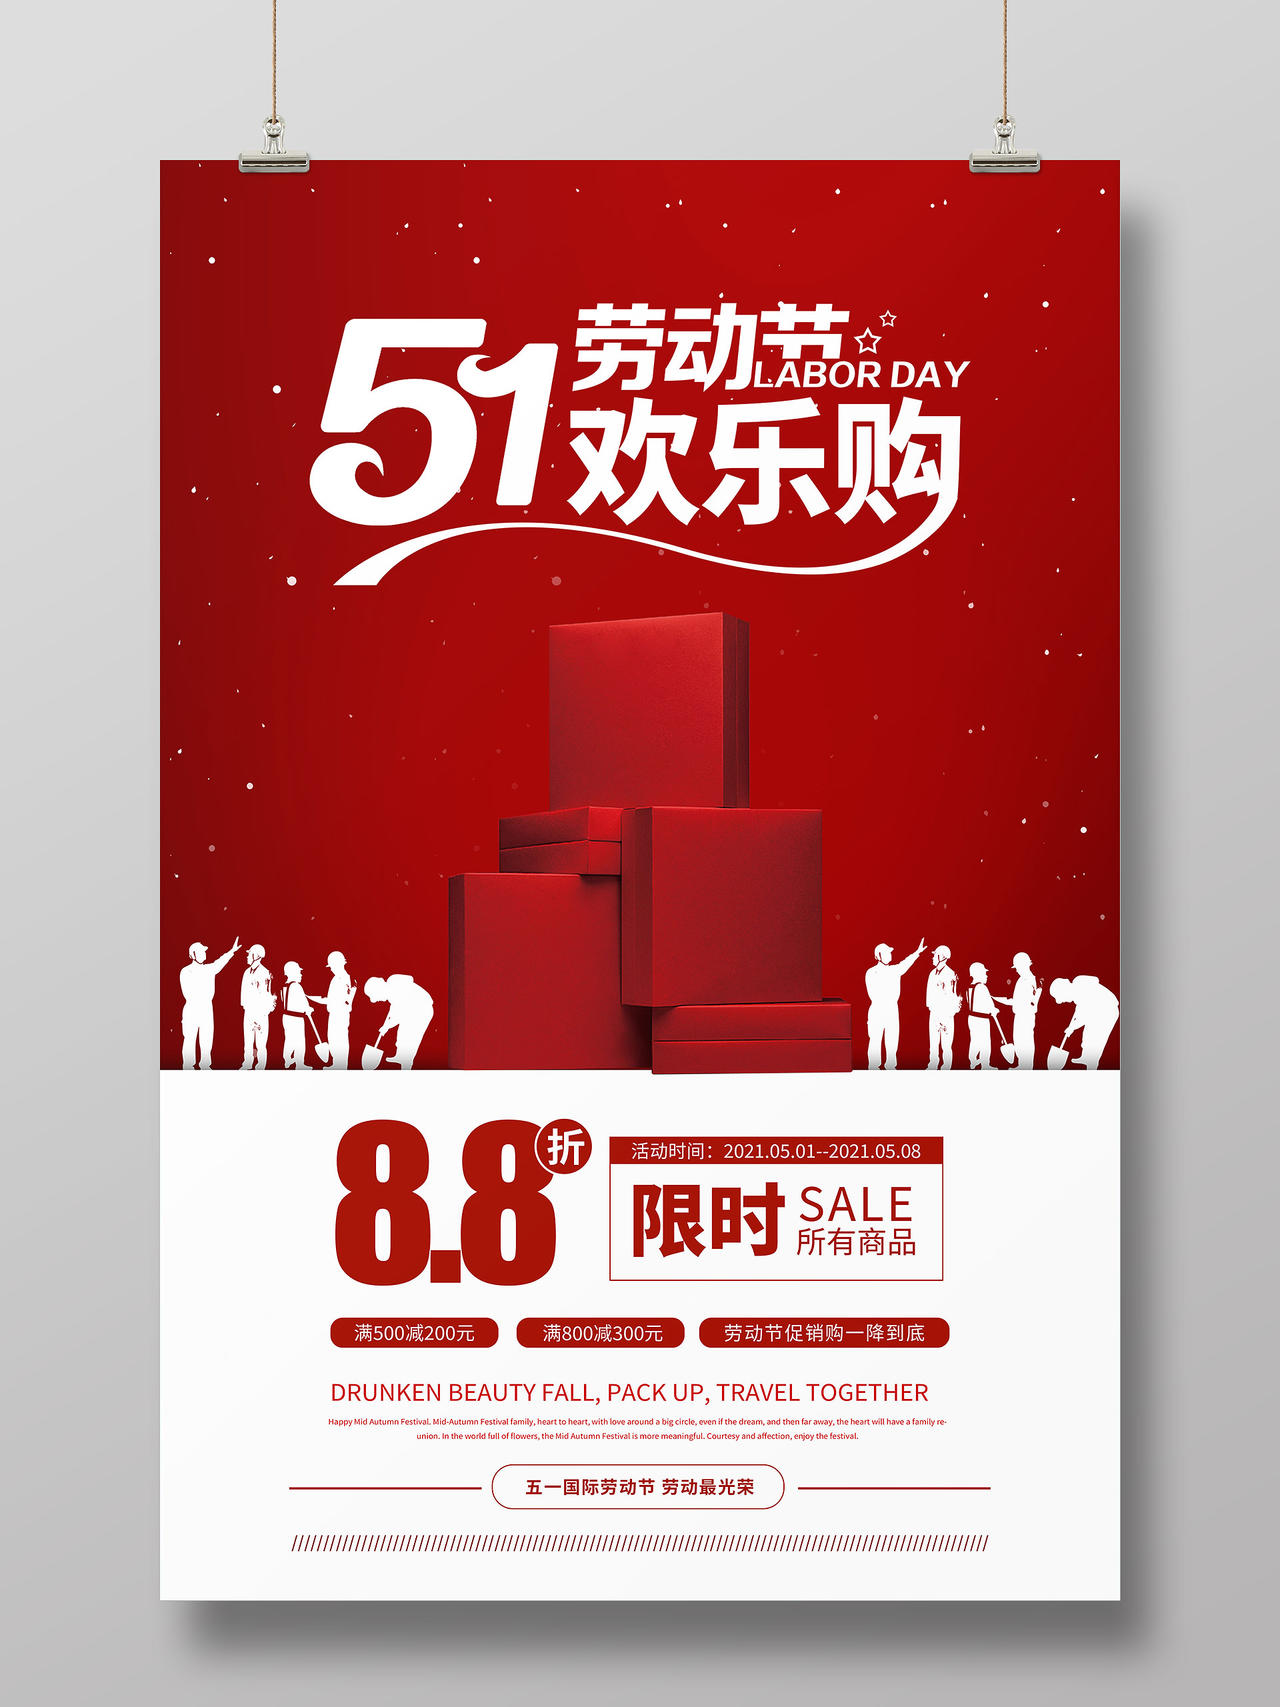 红色背景51五一劳动节欢乐购促销海报